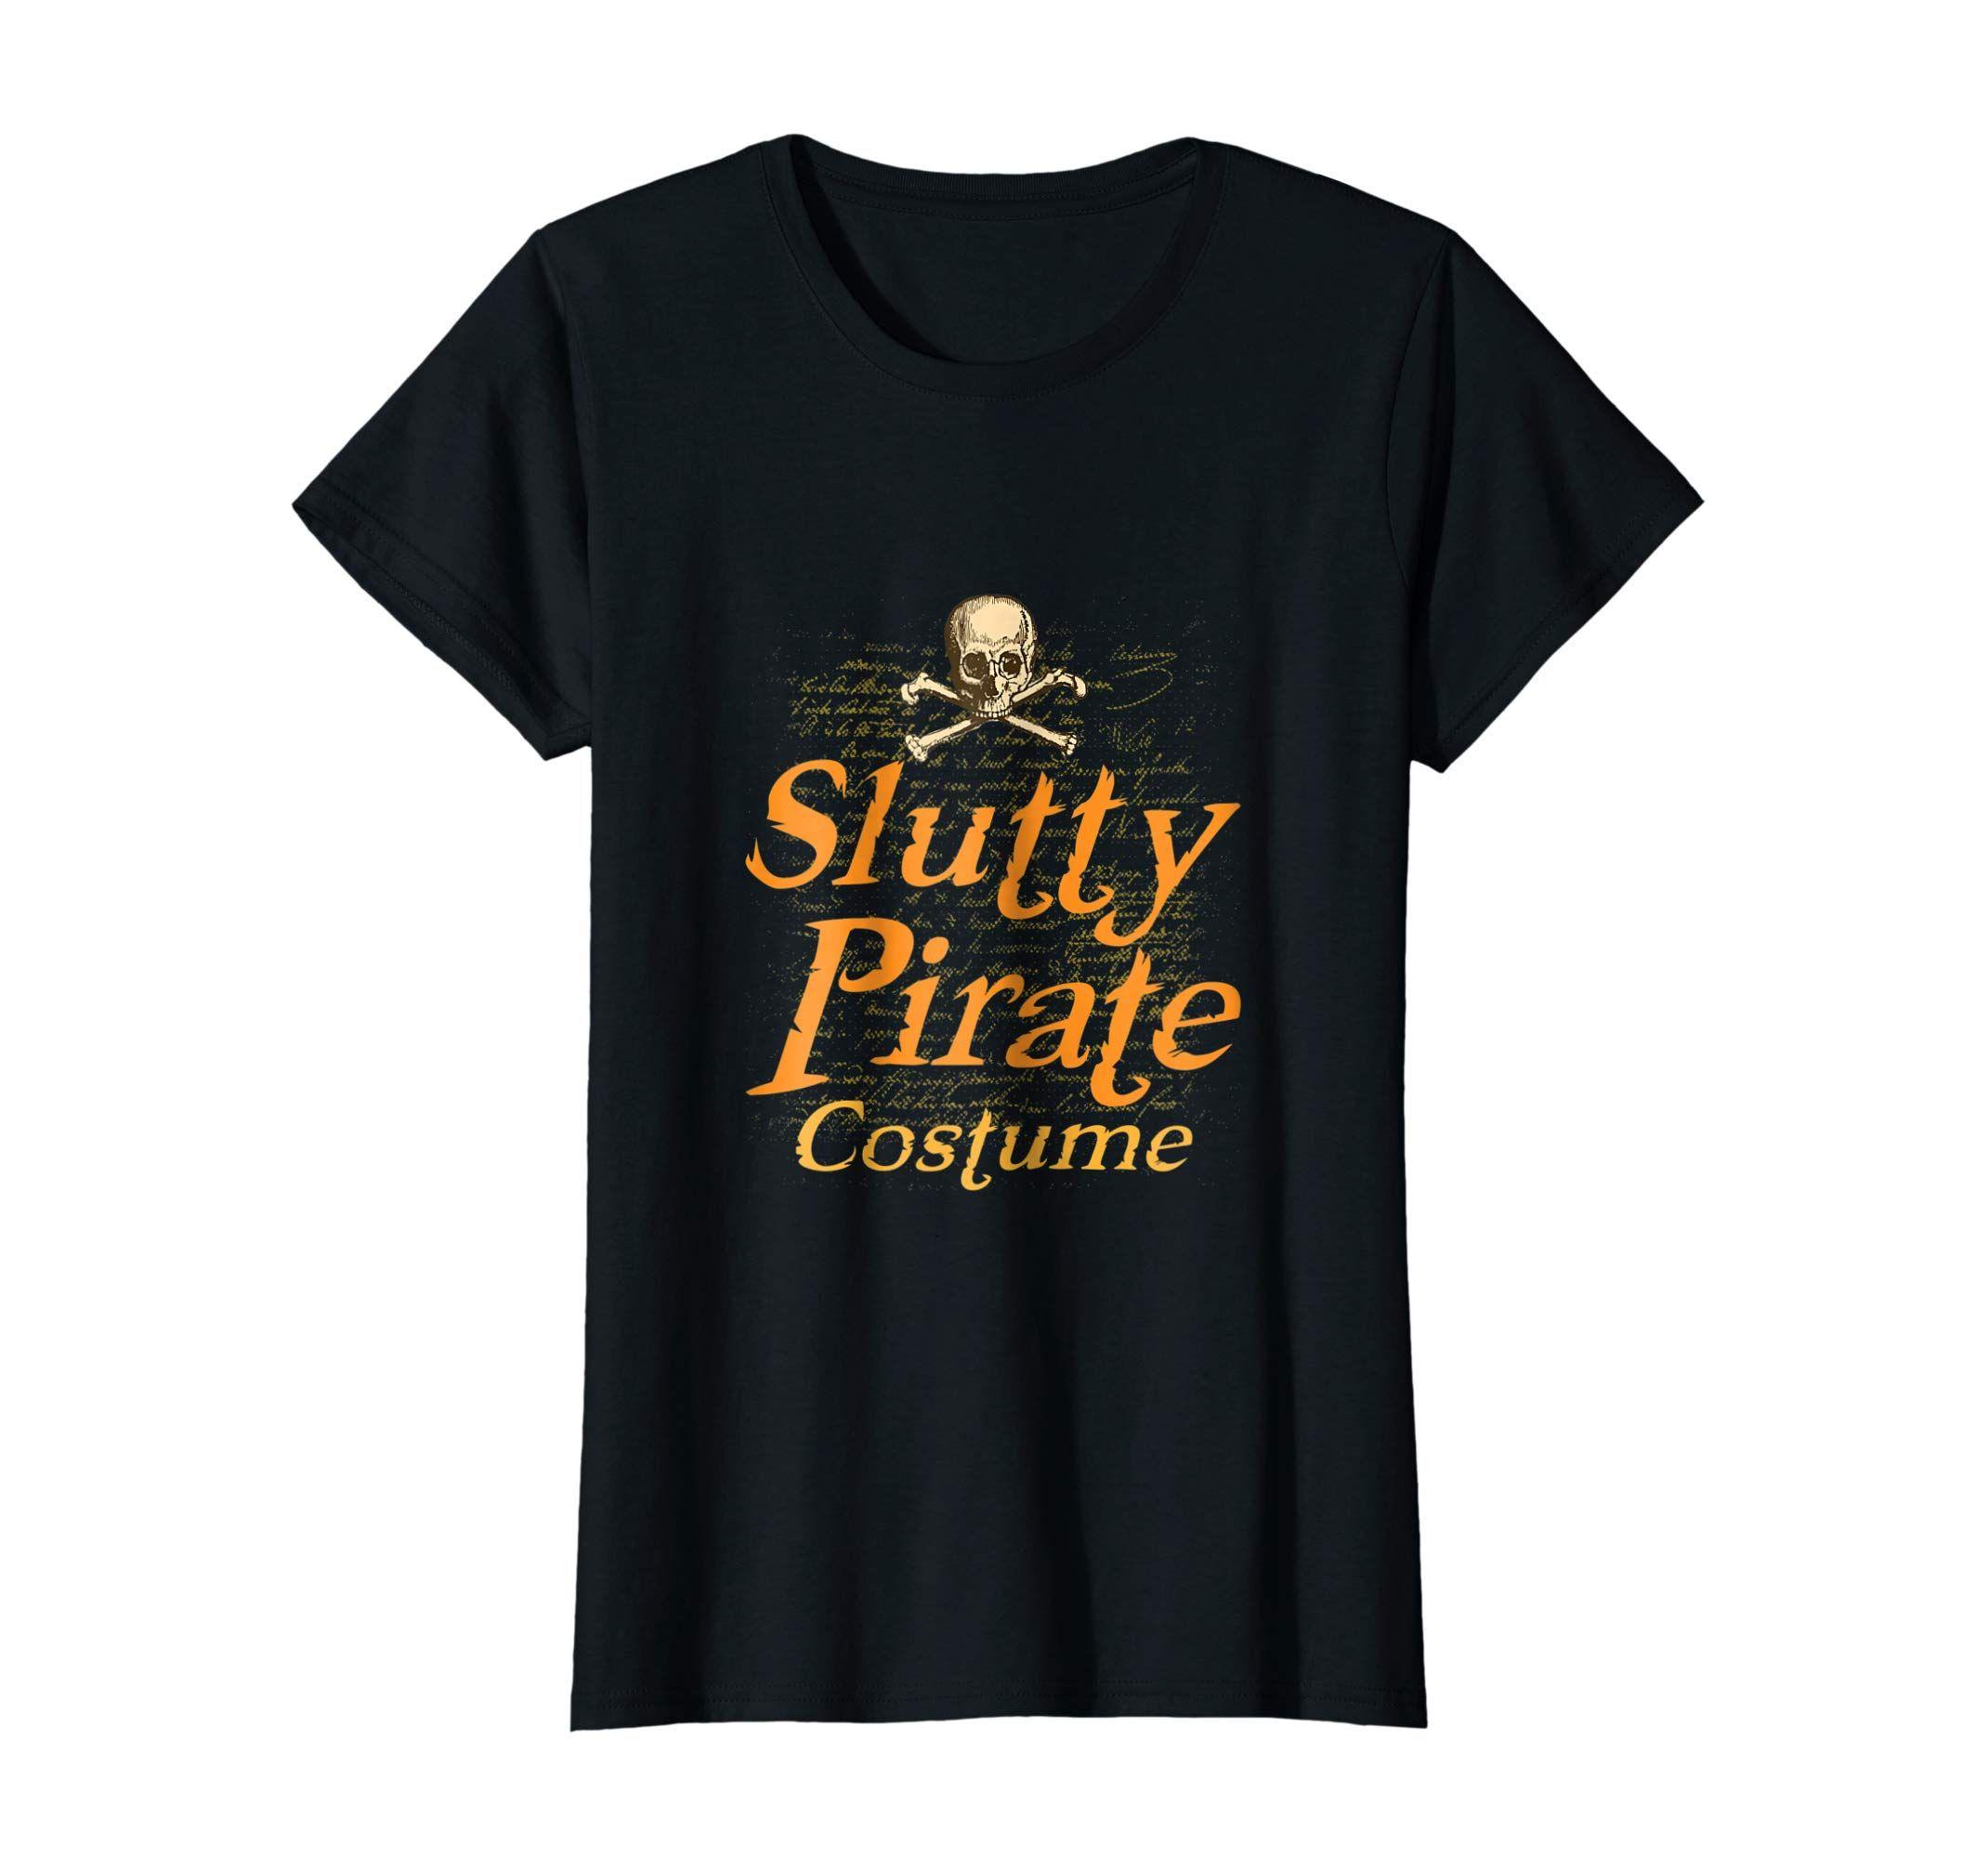 AOHP Logo - Amazon.com: Retro Halloween Samhain Pirate Skull Costume T-shirt ...